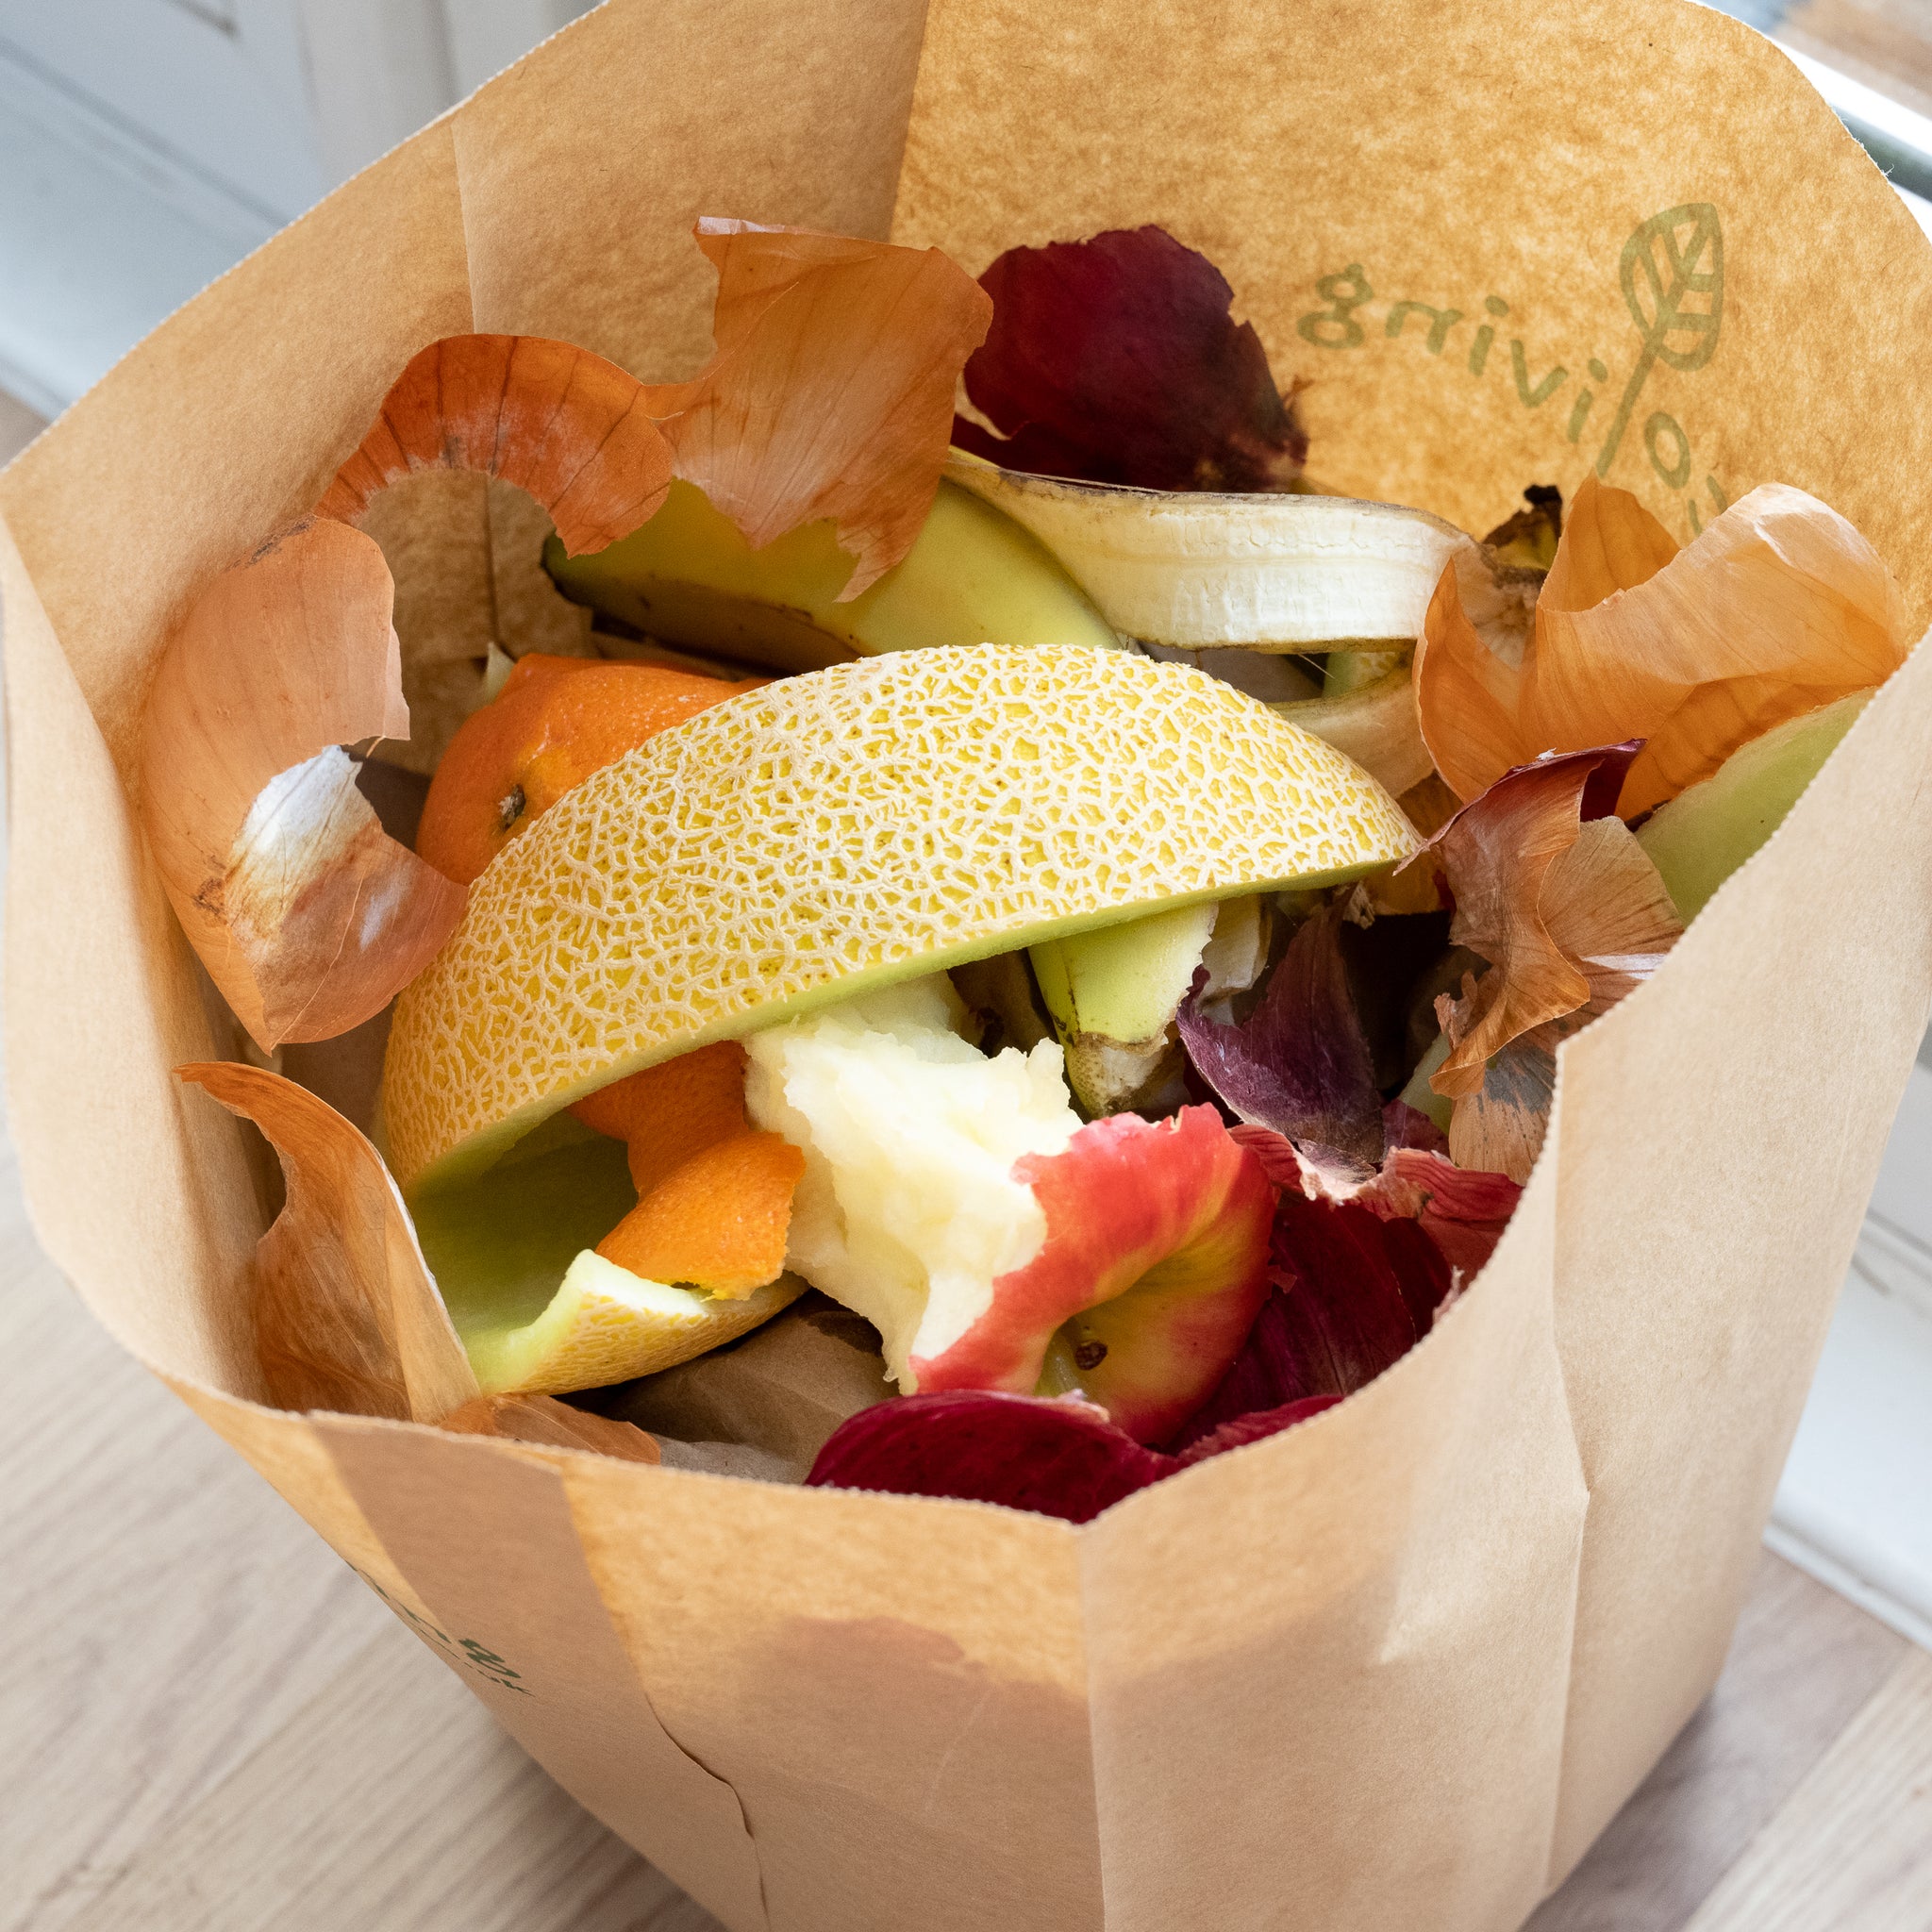 Kitchen Food Waste Bag - Compostable Bag - Leak Resistant -%100 Paper  Cellu... | eBay